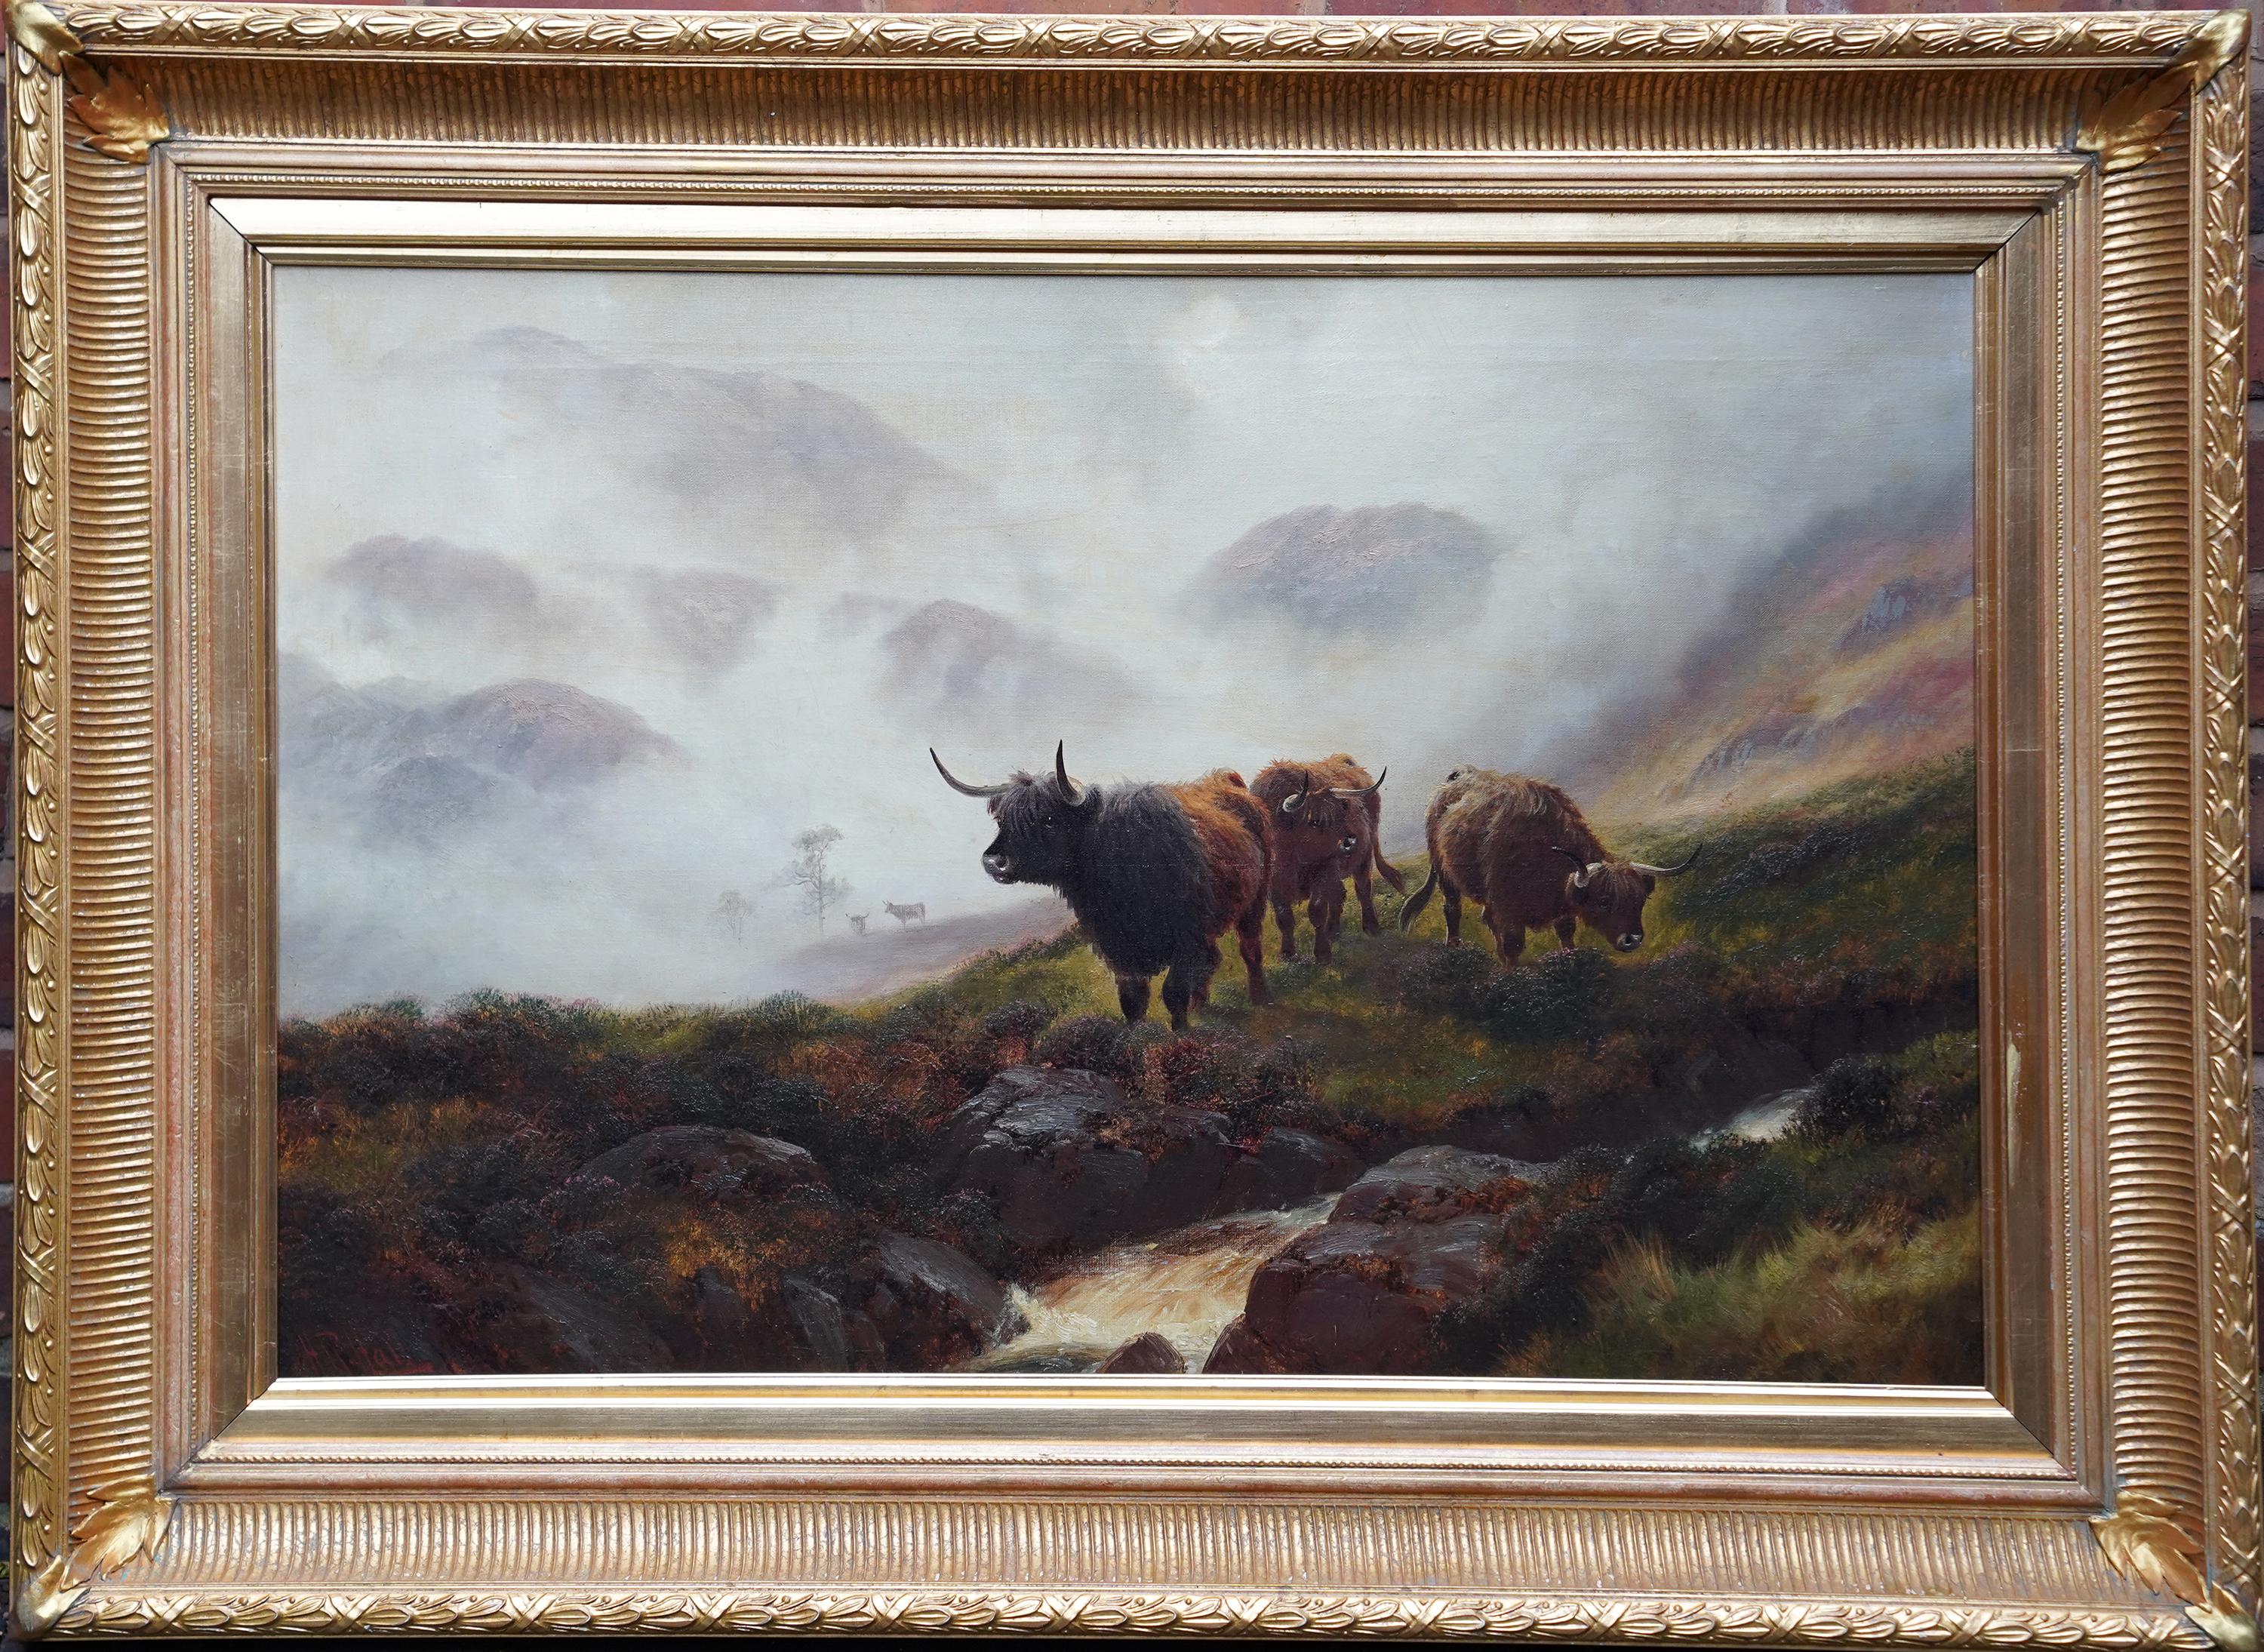 Ben Lomond Scotland Cattle in Mist - British 19thC art landscape oil painting